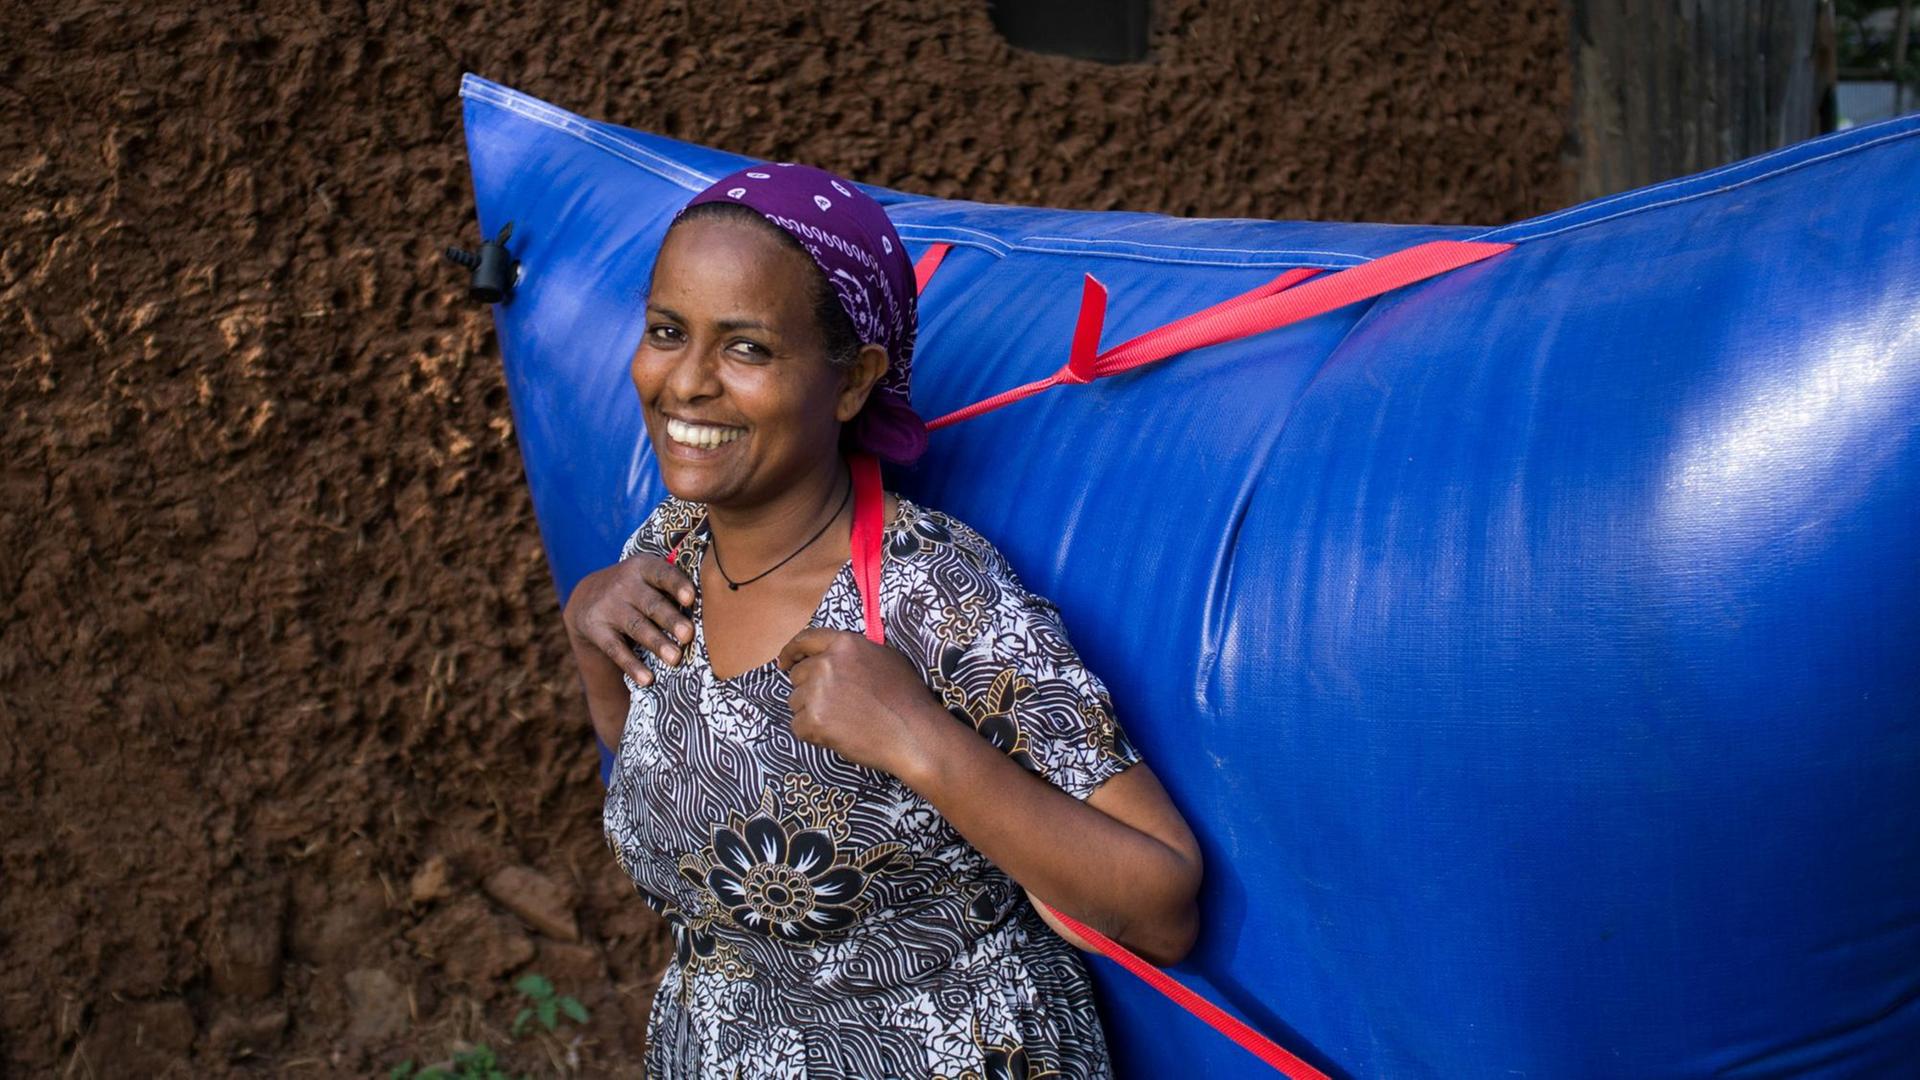 Eine Afrikanerin im geblümten Kleid trägt einen riesigen knallblauen Plastikrucksack voller Biogas auf dem Rücken.